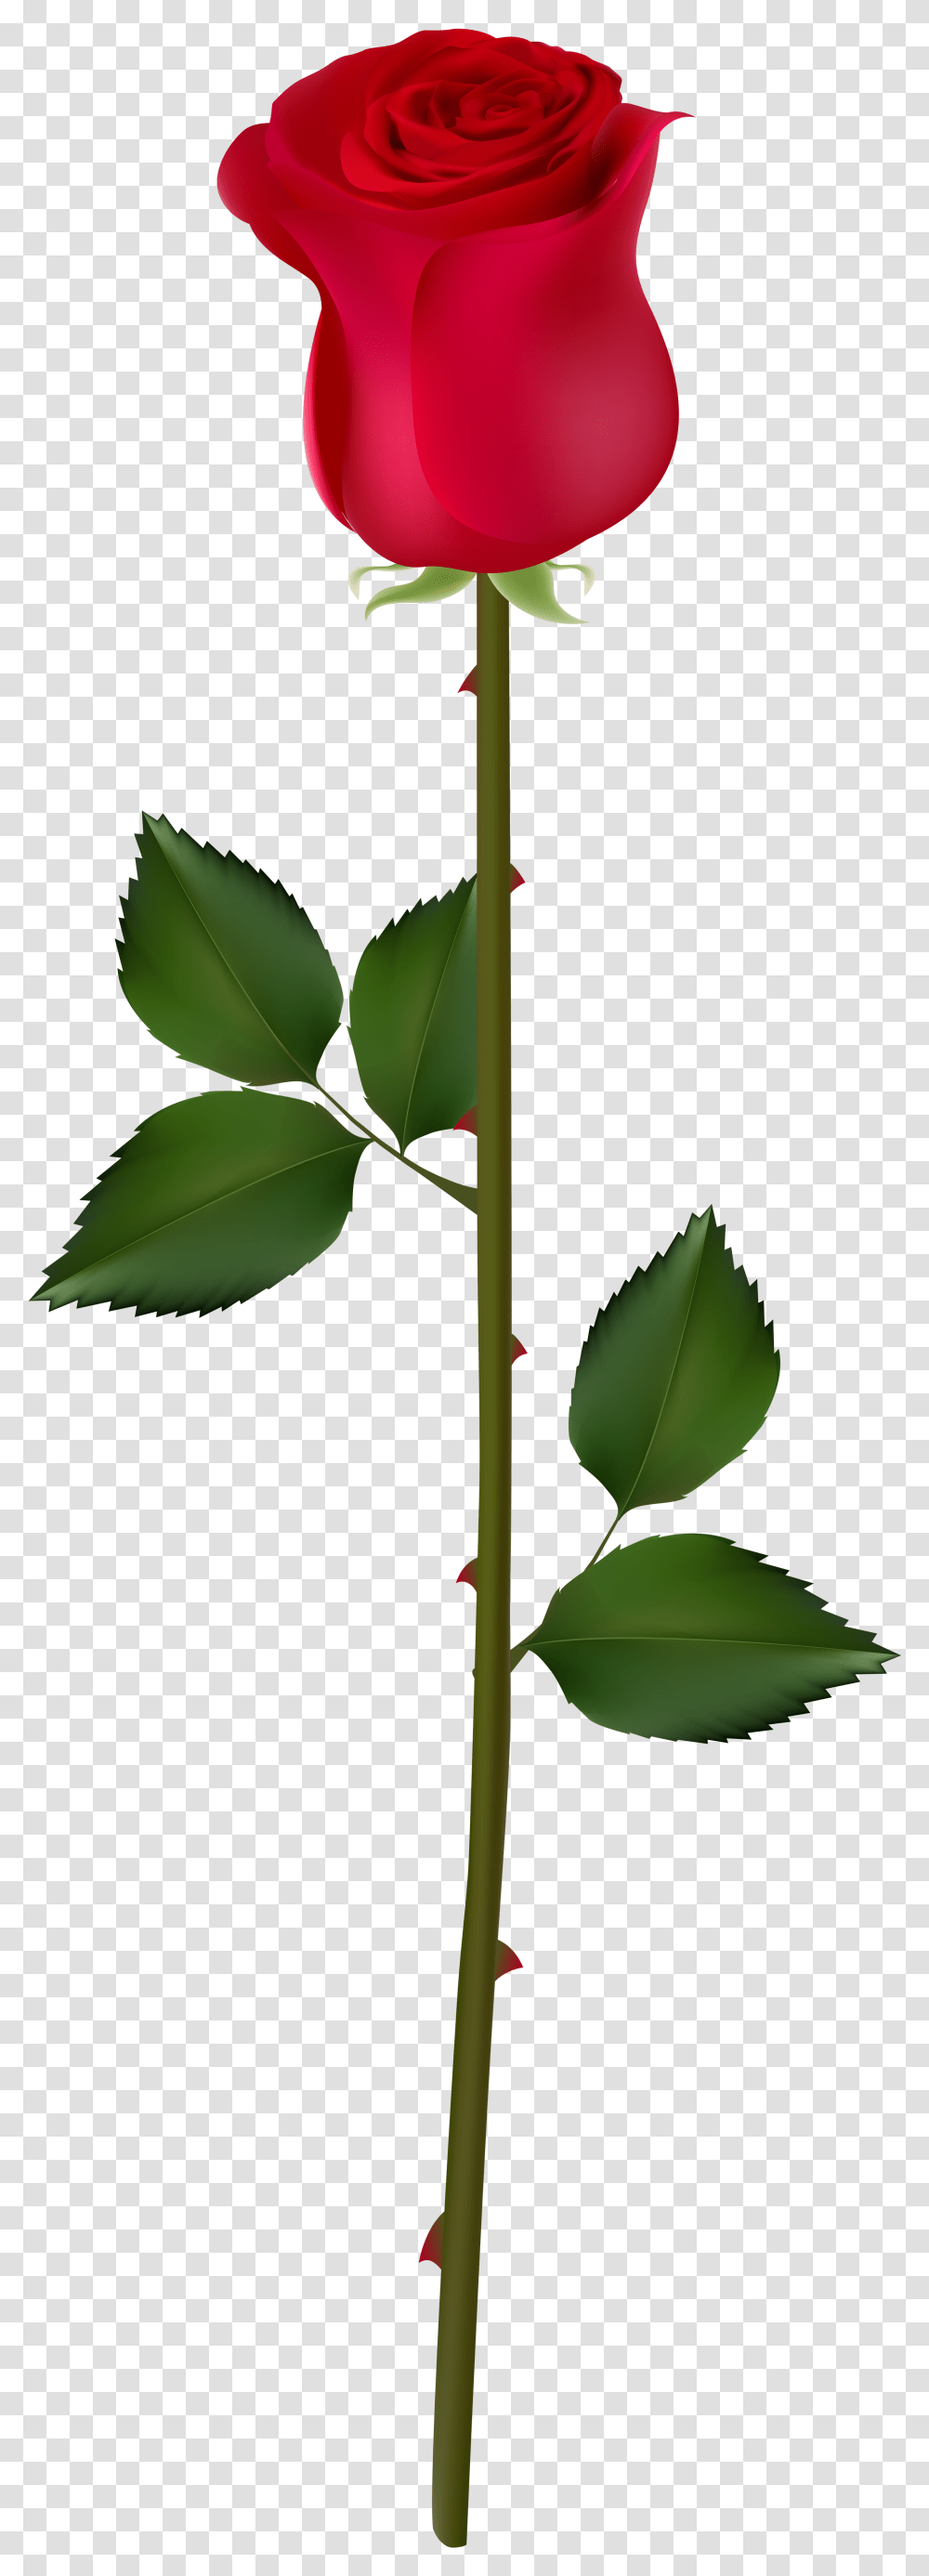 Red Rose Rose For Picsart, Leaf, Plant, Green, Annonaceae Transparent Png